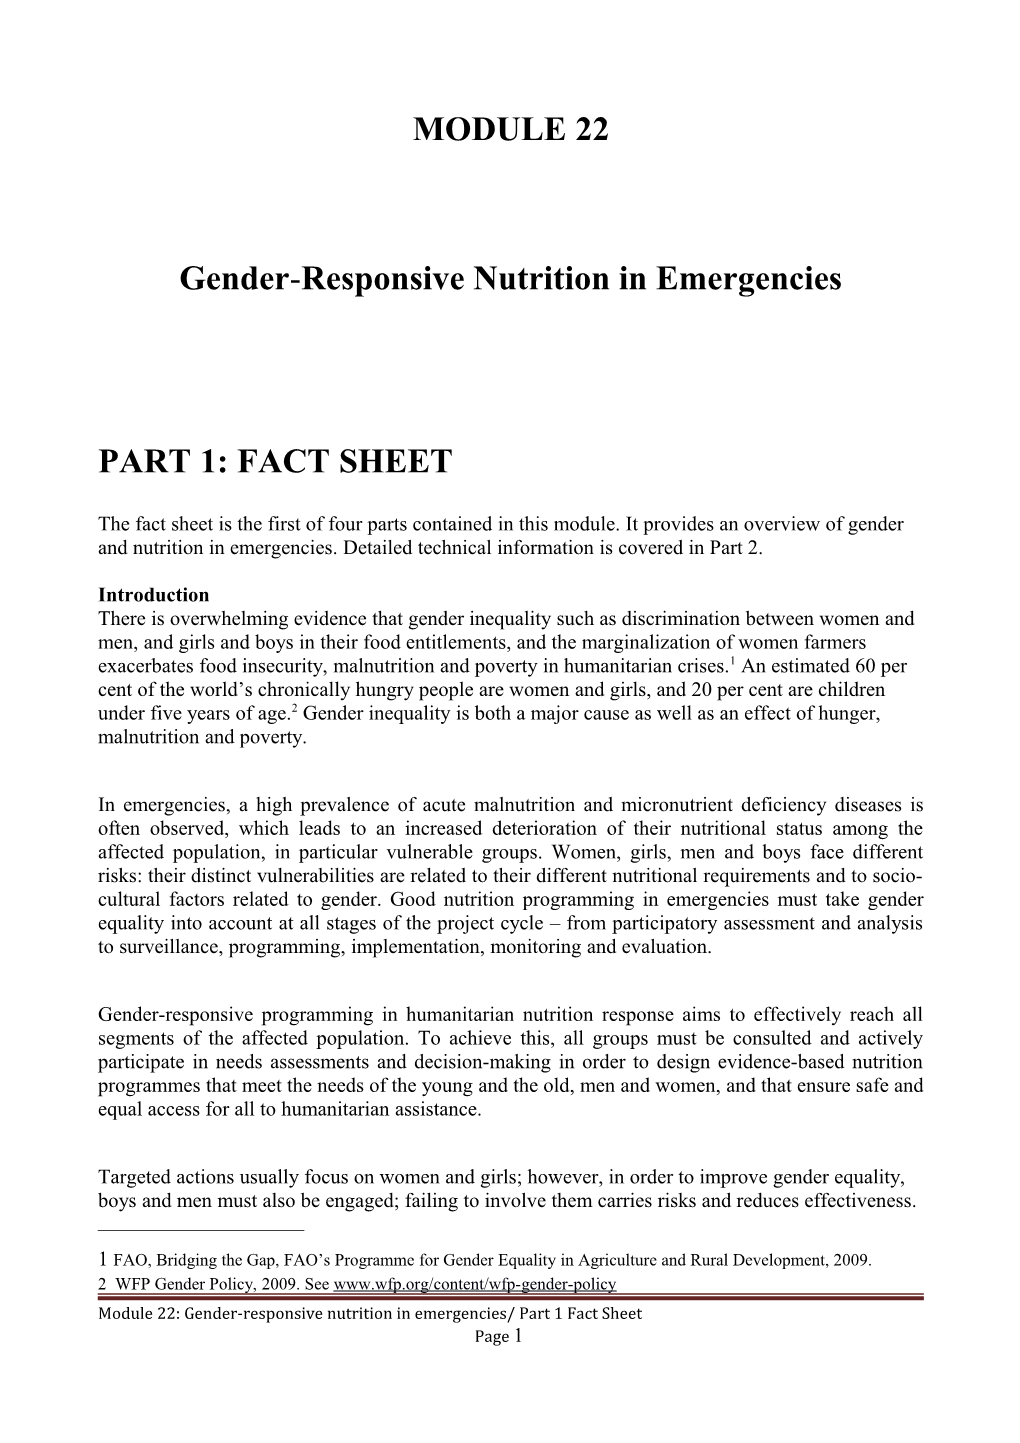 Gender-Responsive Nutrition in Emergencies